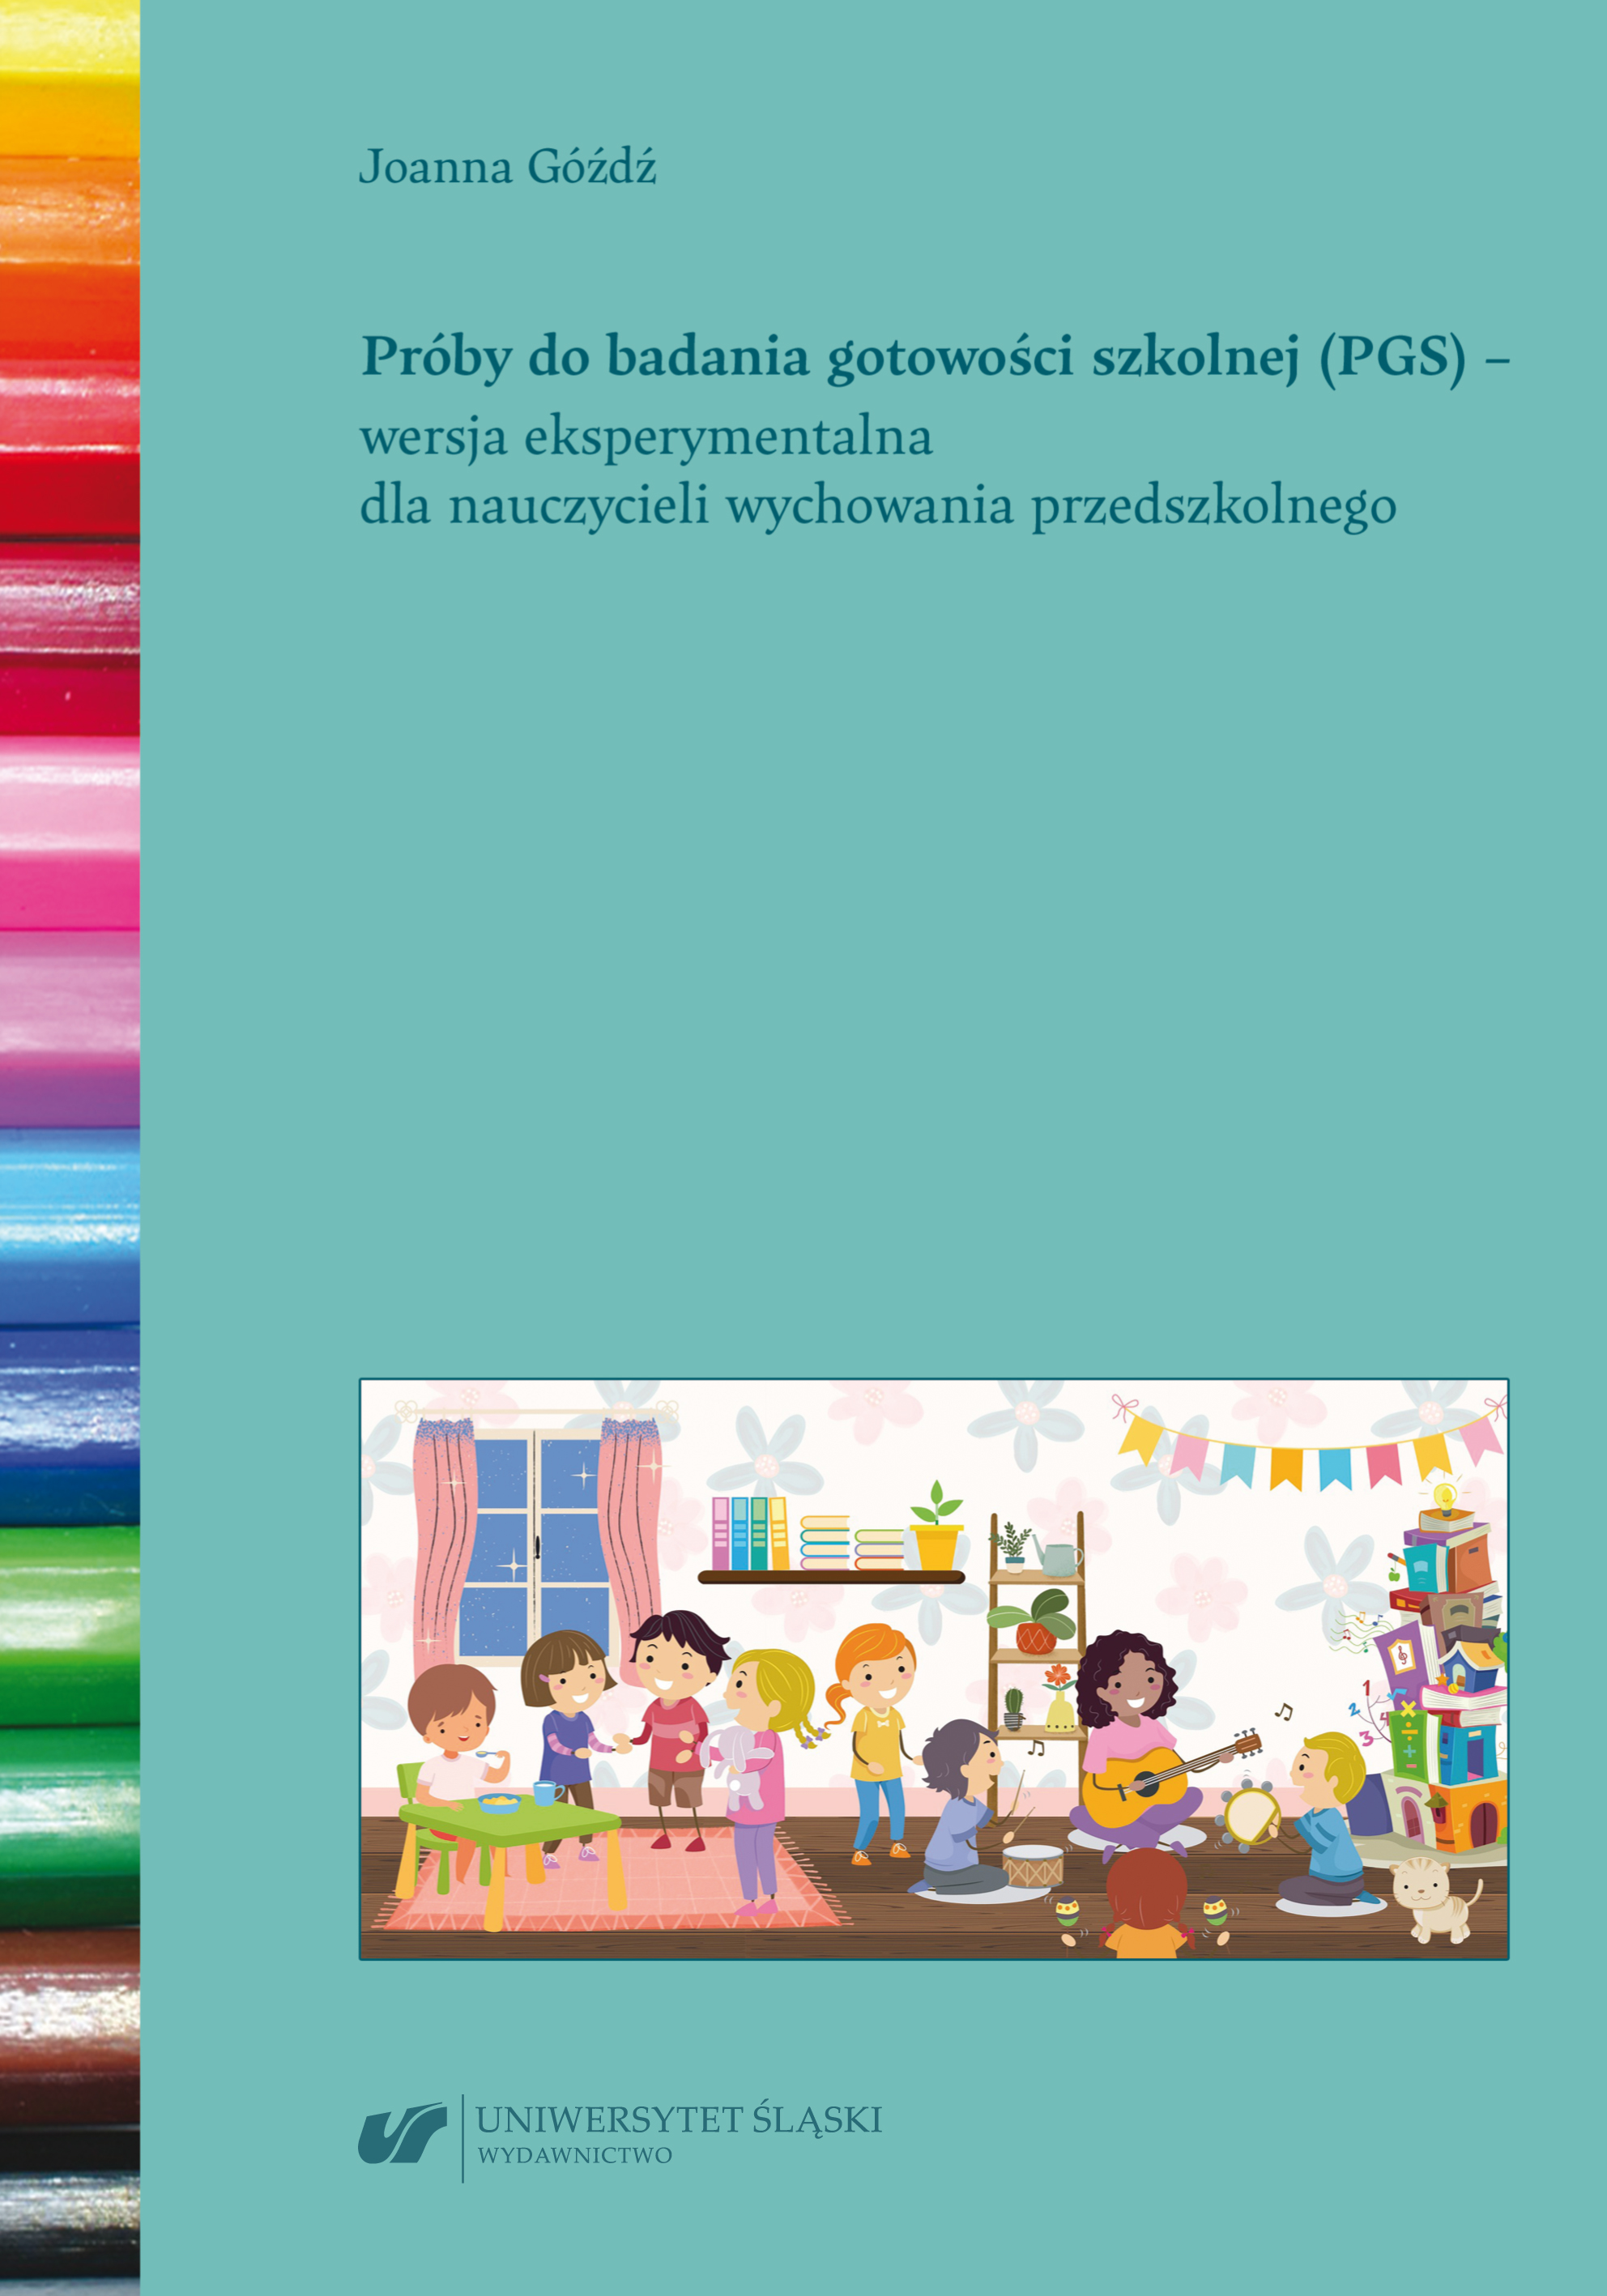 Próby do badania gotowości szkolnej (PGS) – wersja eksperymentalna dla nauczycieli wychowania przedszkolnego